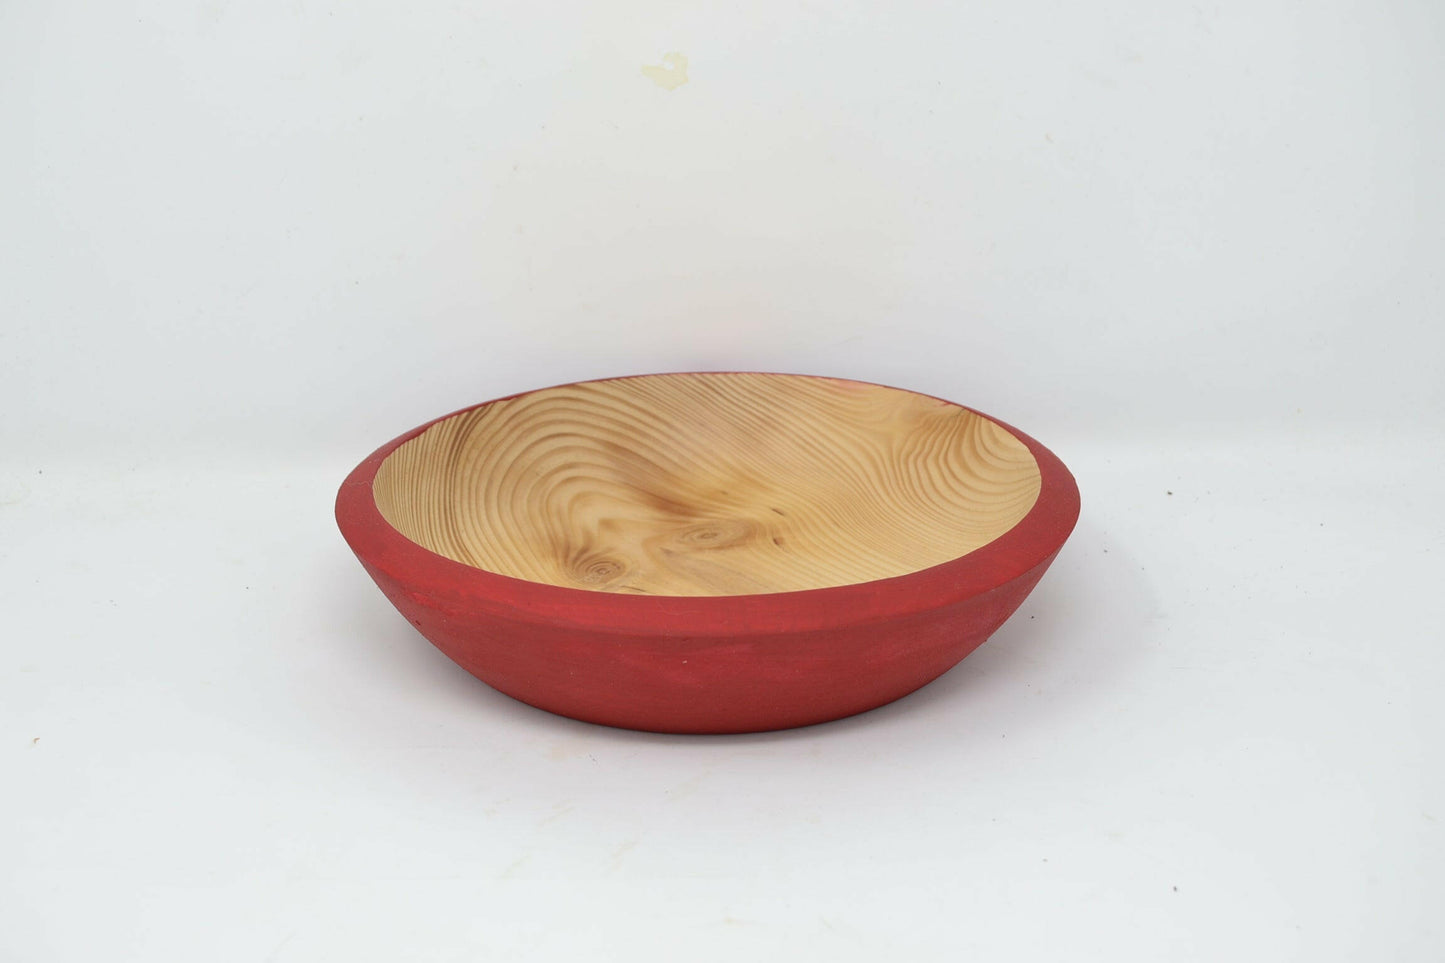 Holzschale aus Fichtenholz, rot gefärbt